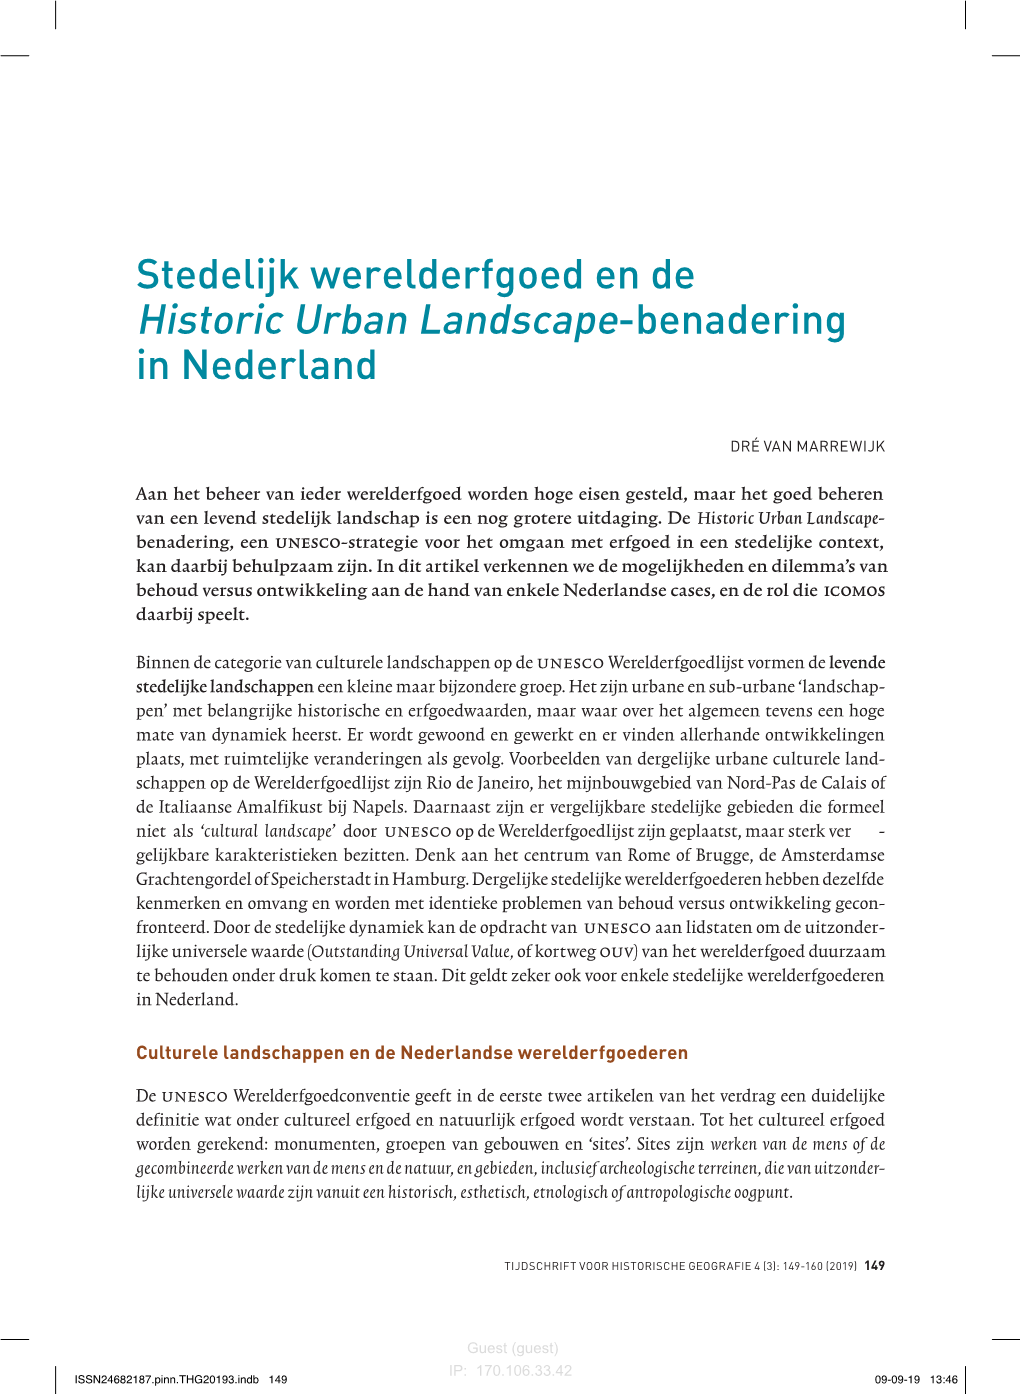 Stedelijk Werelderfgoed En De Historic Urban Landscape-Benadering in Nederland